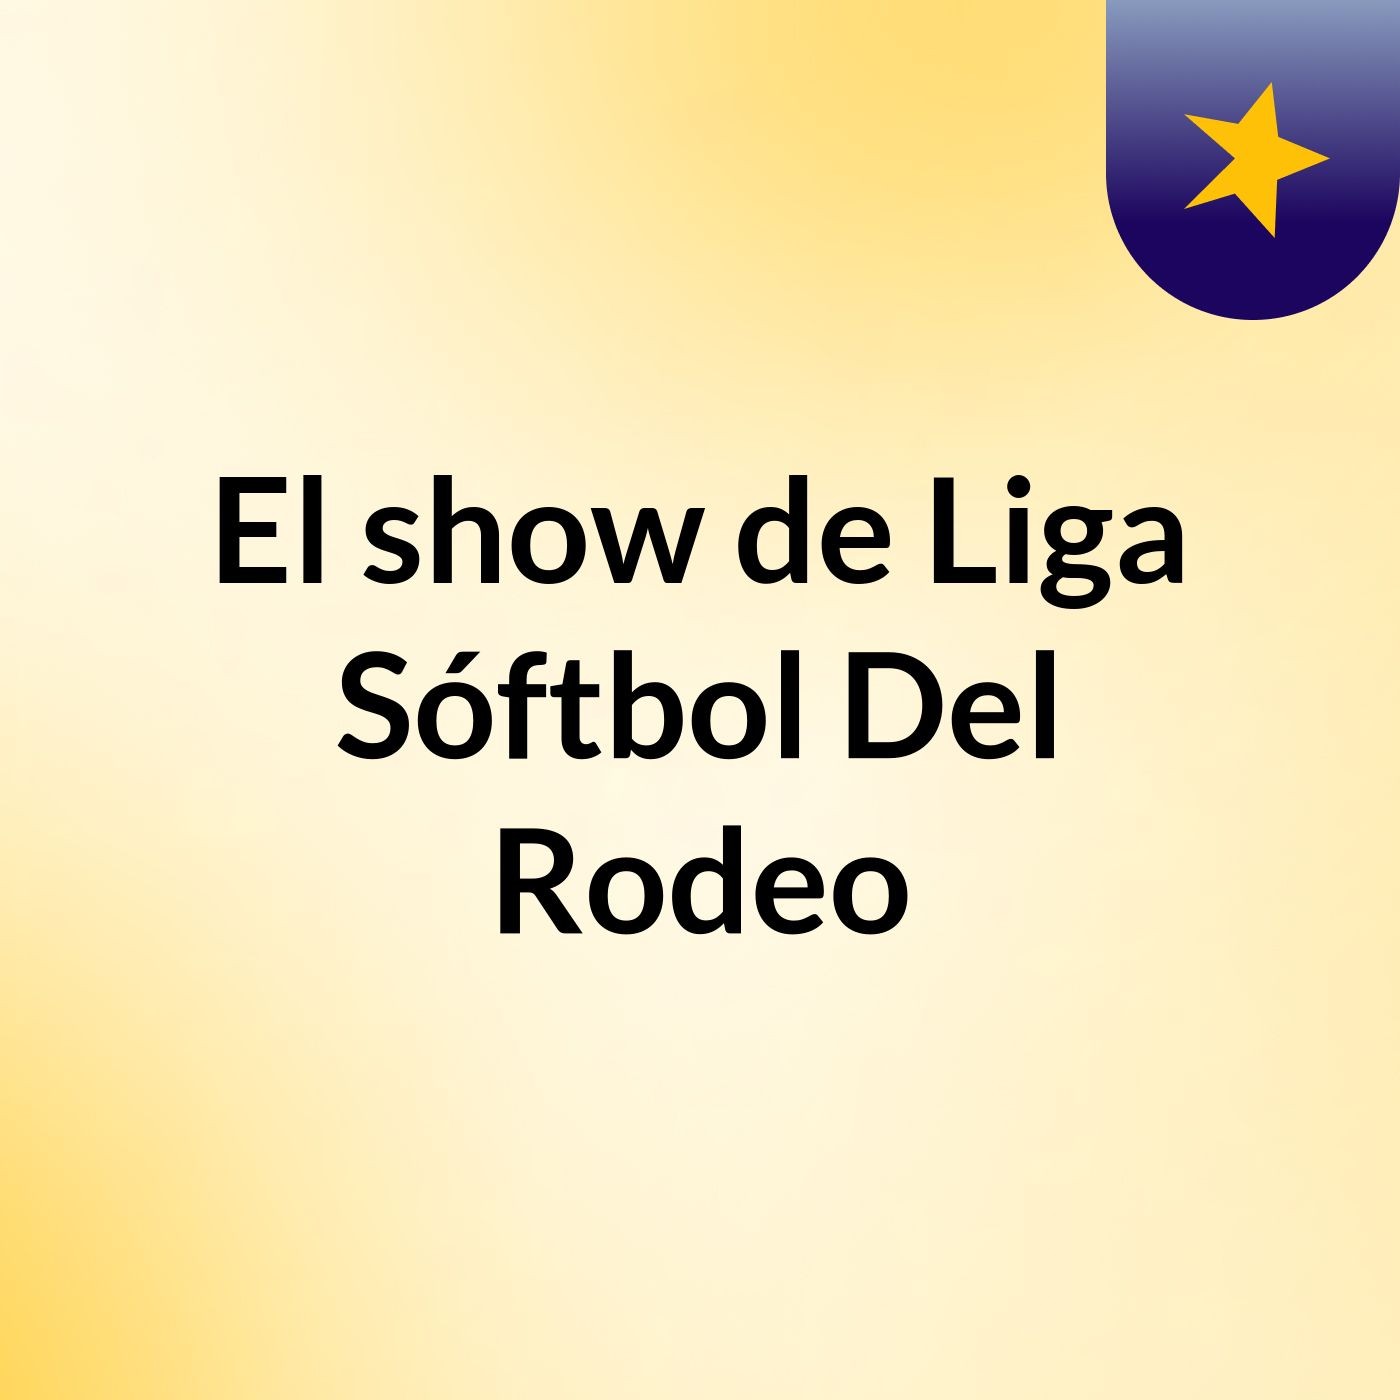 El show de Liga Sóftbol Del Rodeo